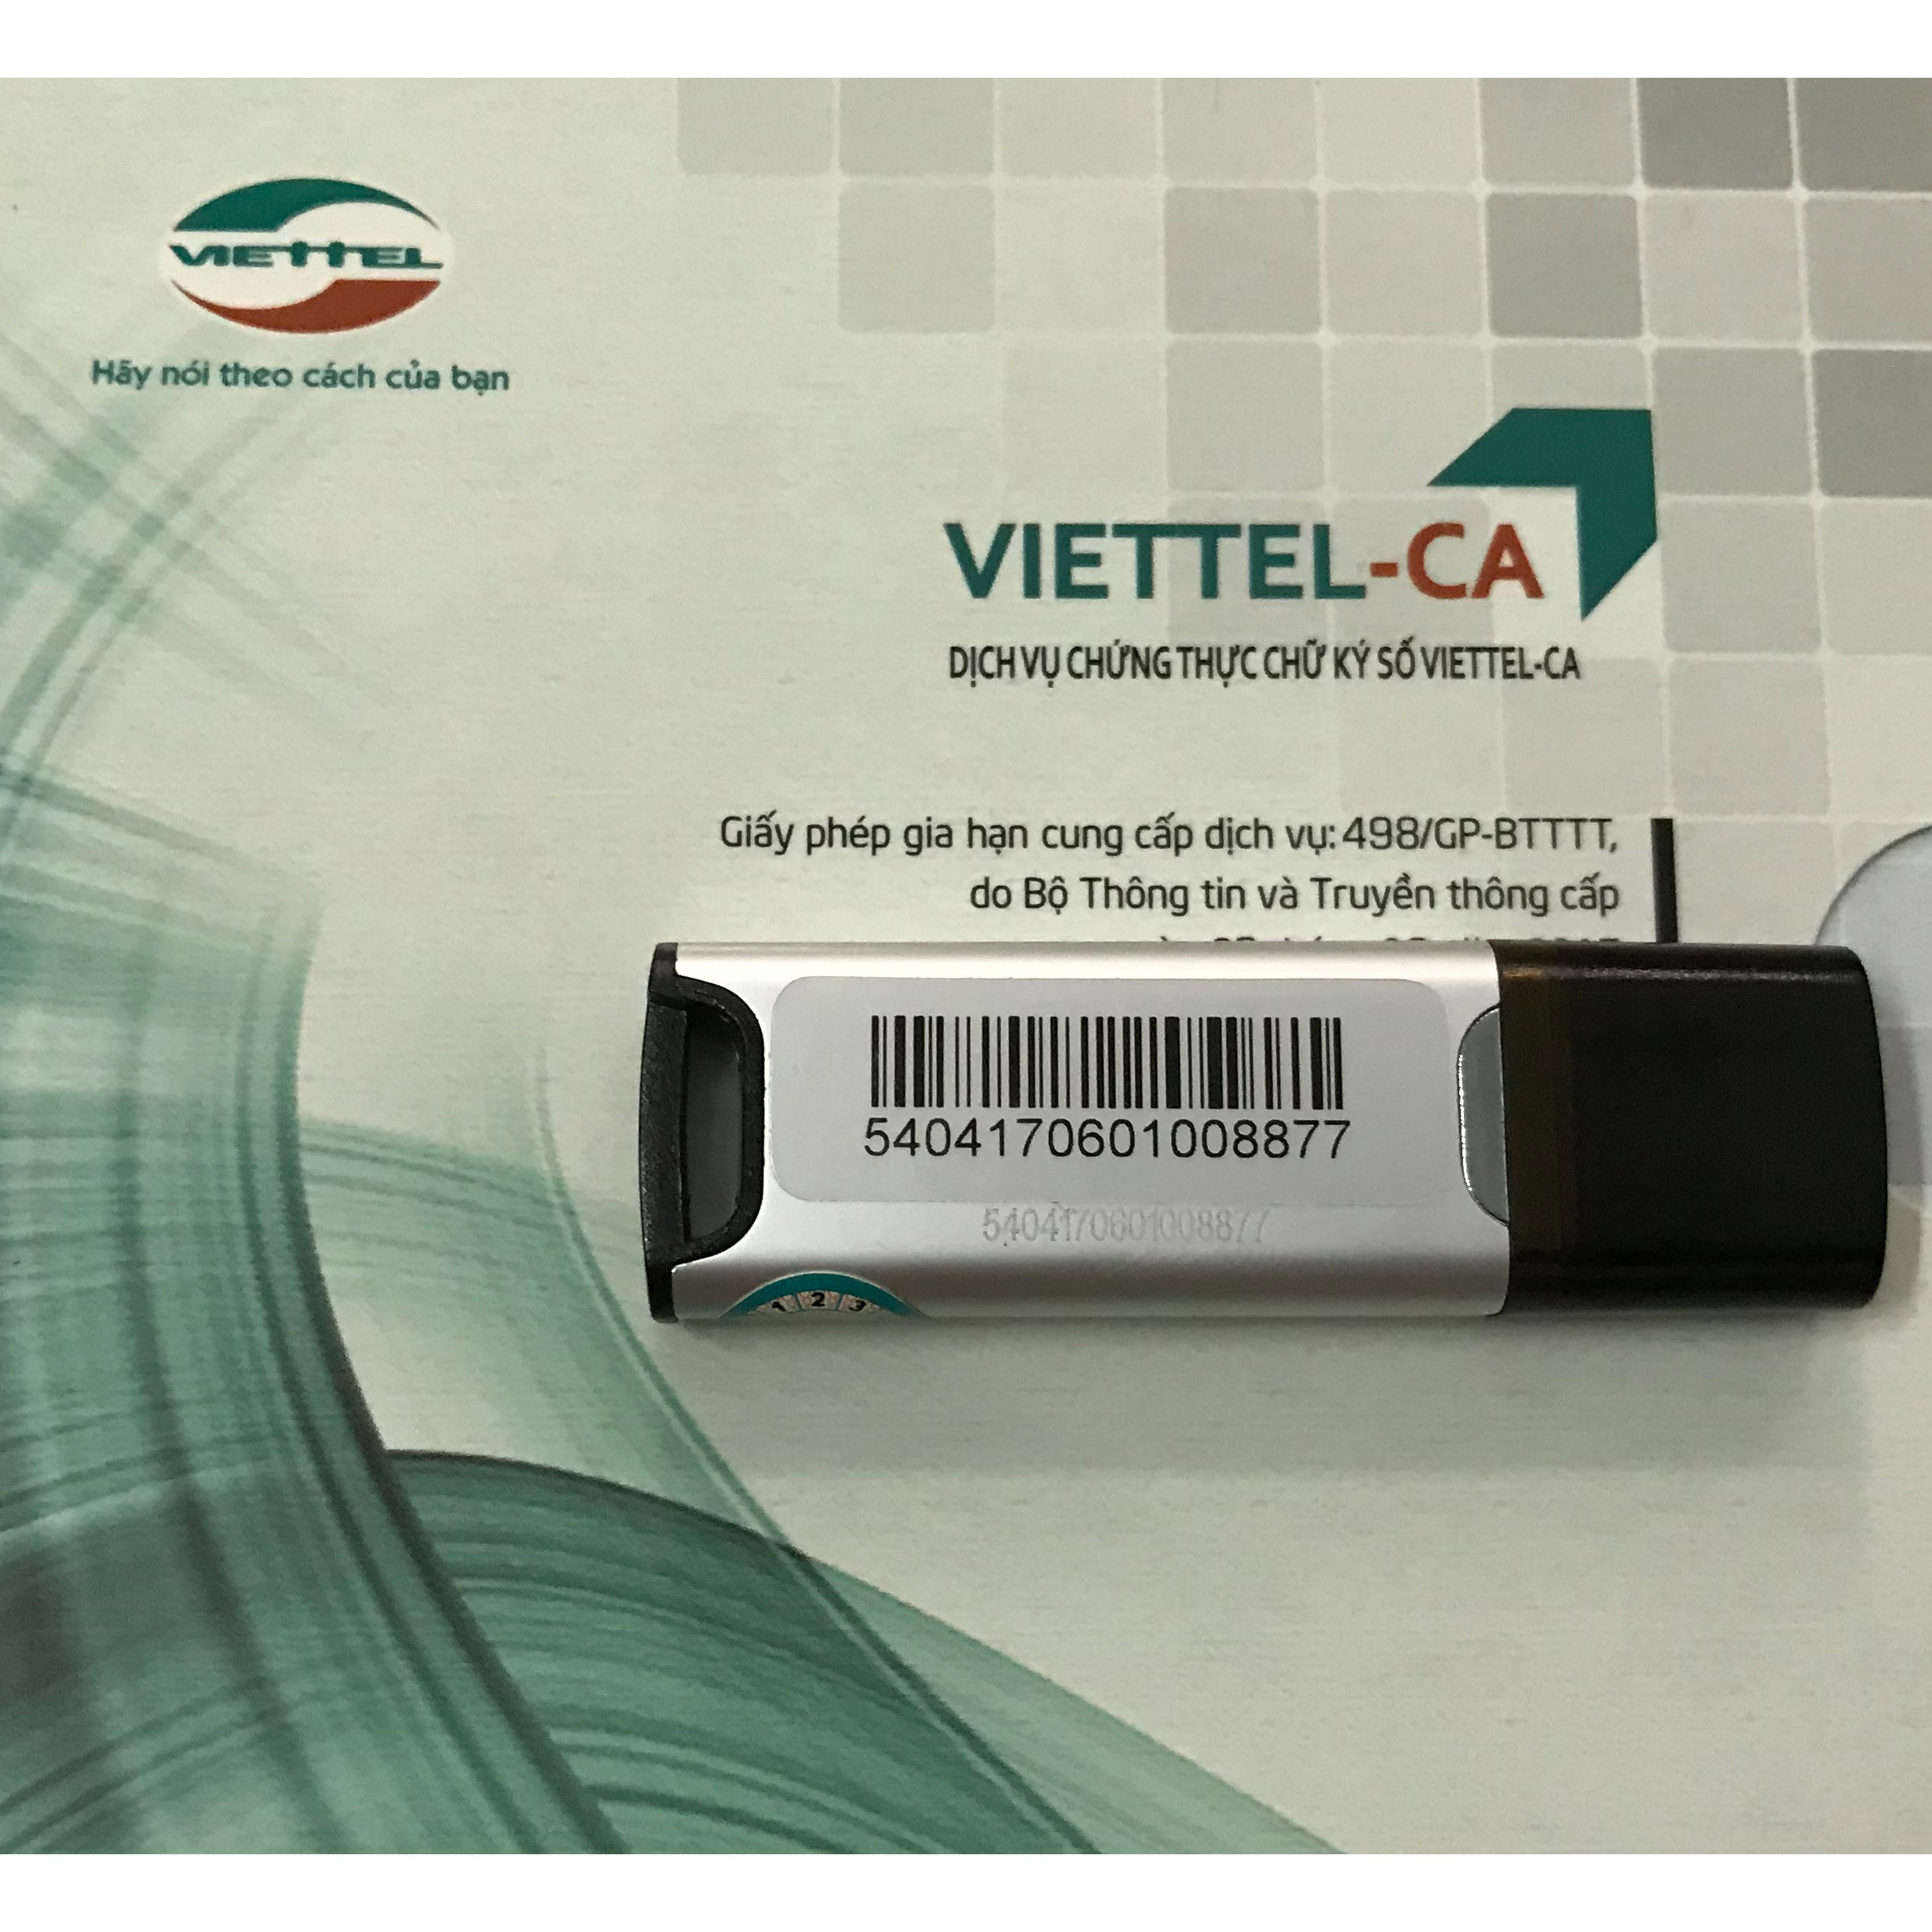 Mua mới chữ ký số USB TOKEN Viettel - Gói đăng ký mới 2 năm chữ ký số Viettel-CA - CHÍNH HÃNG 100%